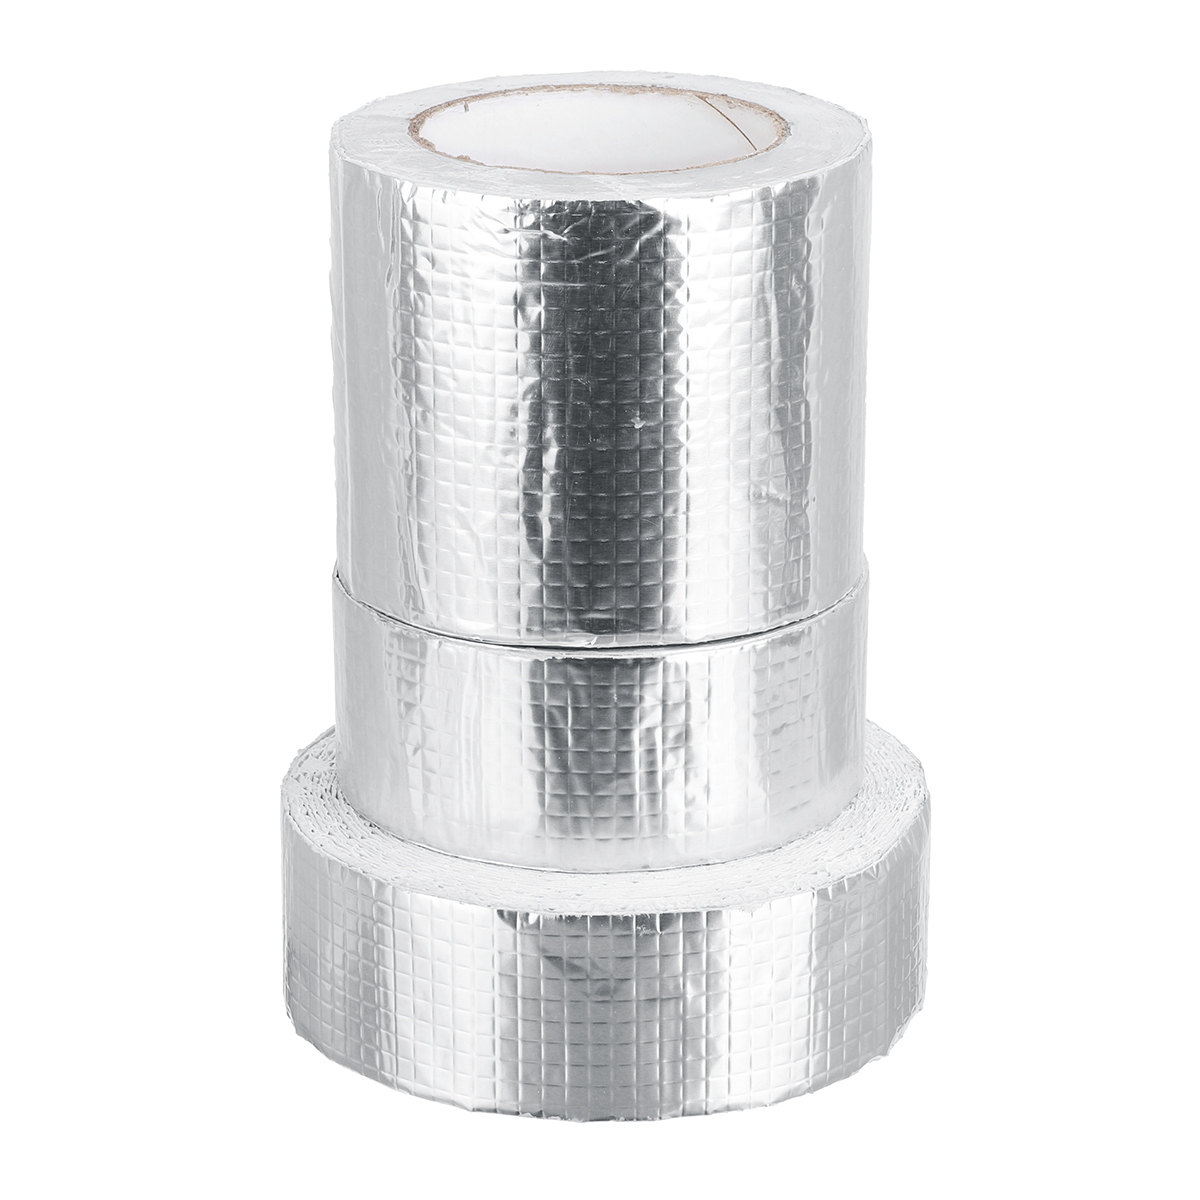 Aluminum-Foil-Butyl-Rubber-Tape-Self-Adhesive-Waterproof-Home-Roof-Pipe-Repair-Tape-1681292-3